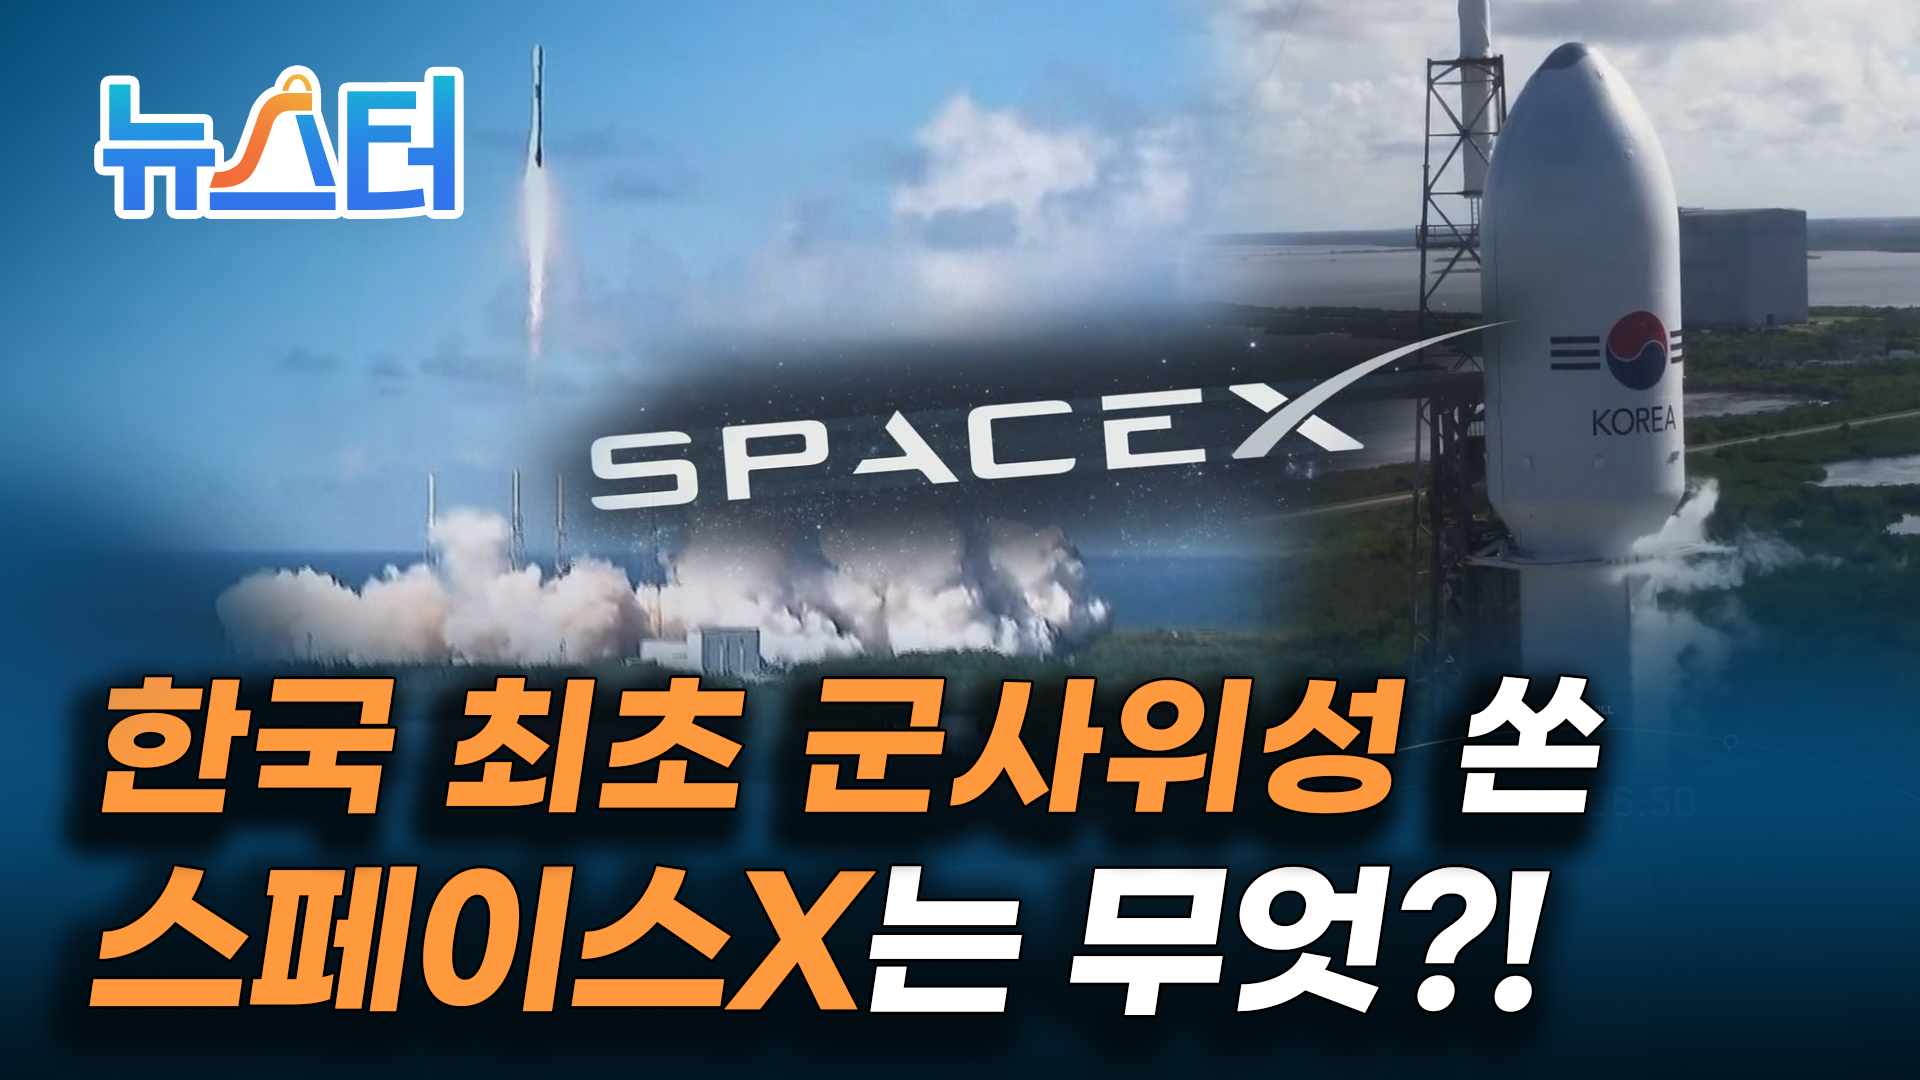 세계에서 10번째로 군사 전용 위성을 보유하게 된 한국, 그 뒤에는 스페이스X가 있었다 [뉴스터] 게시글 이미지